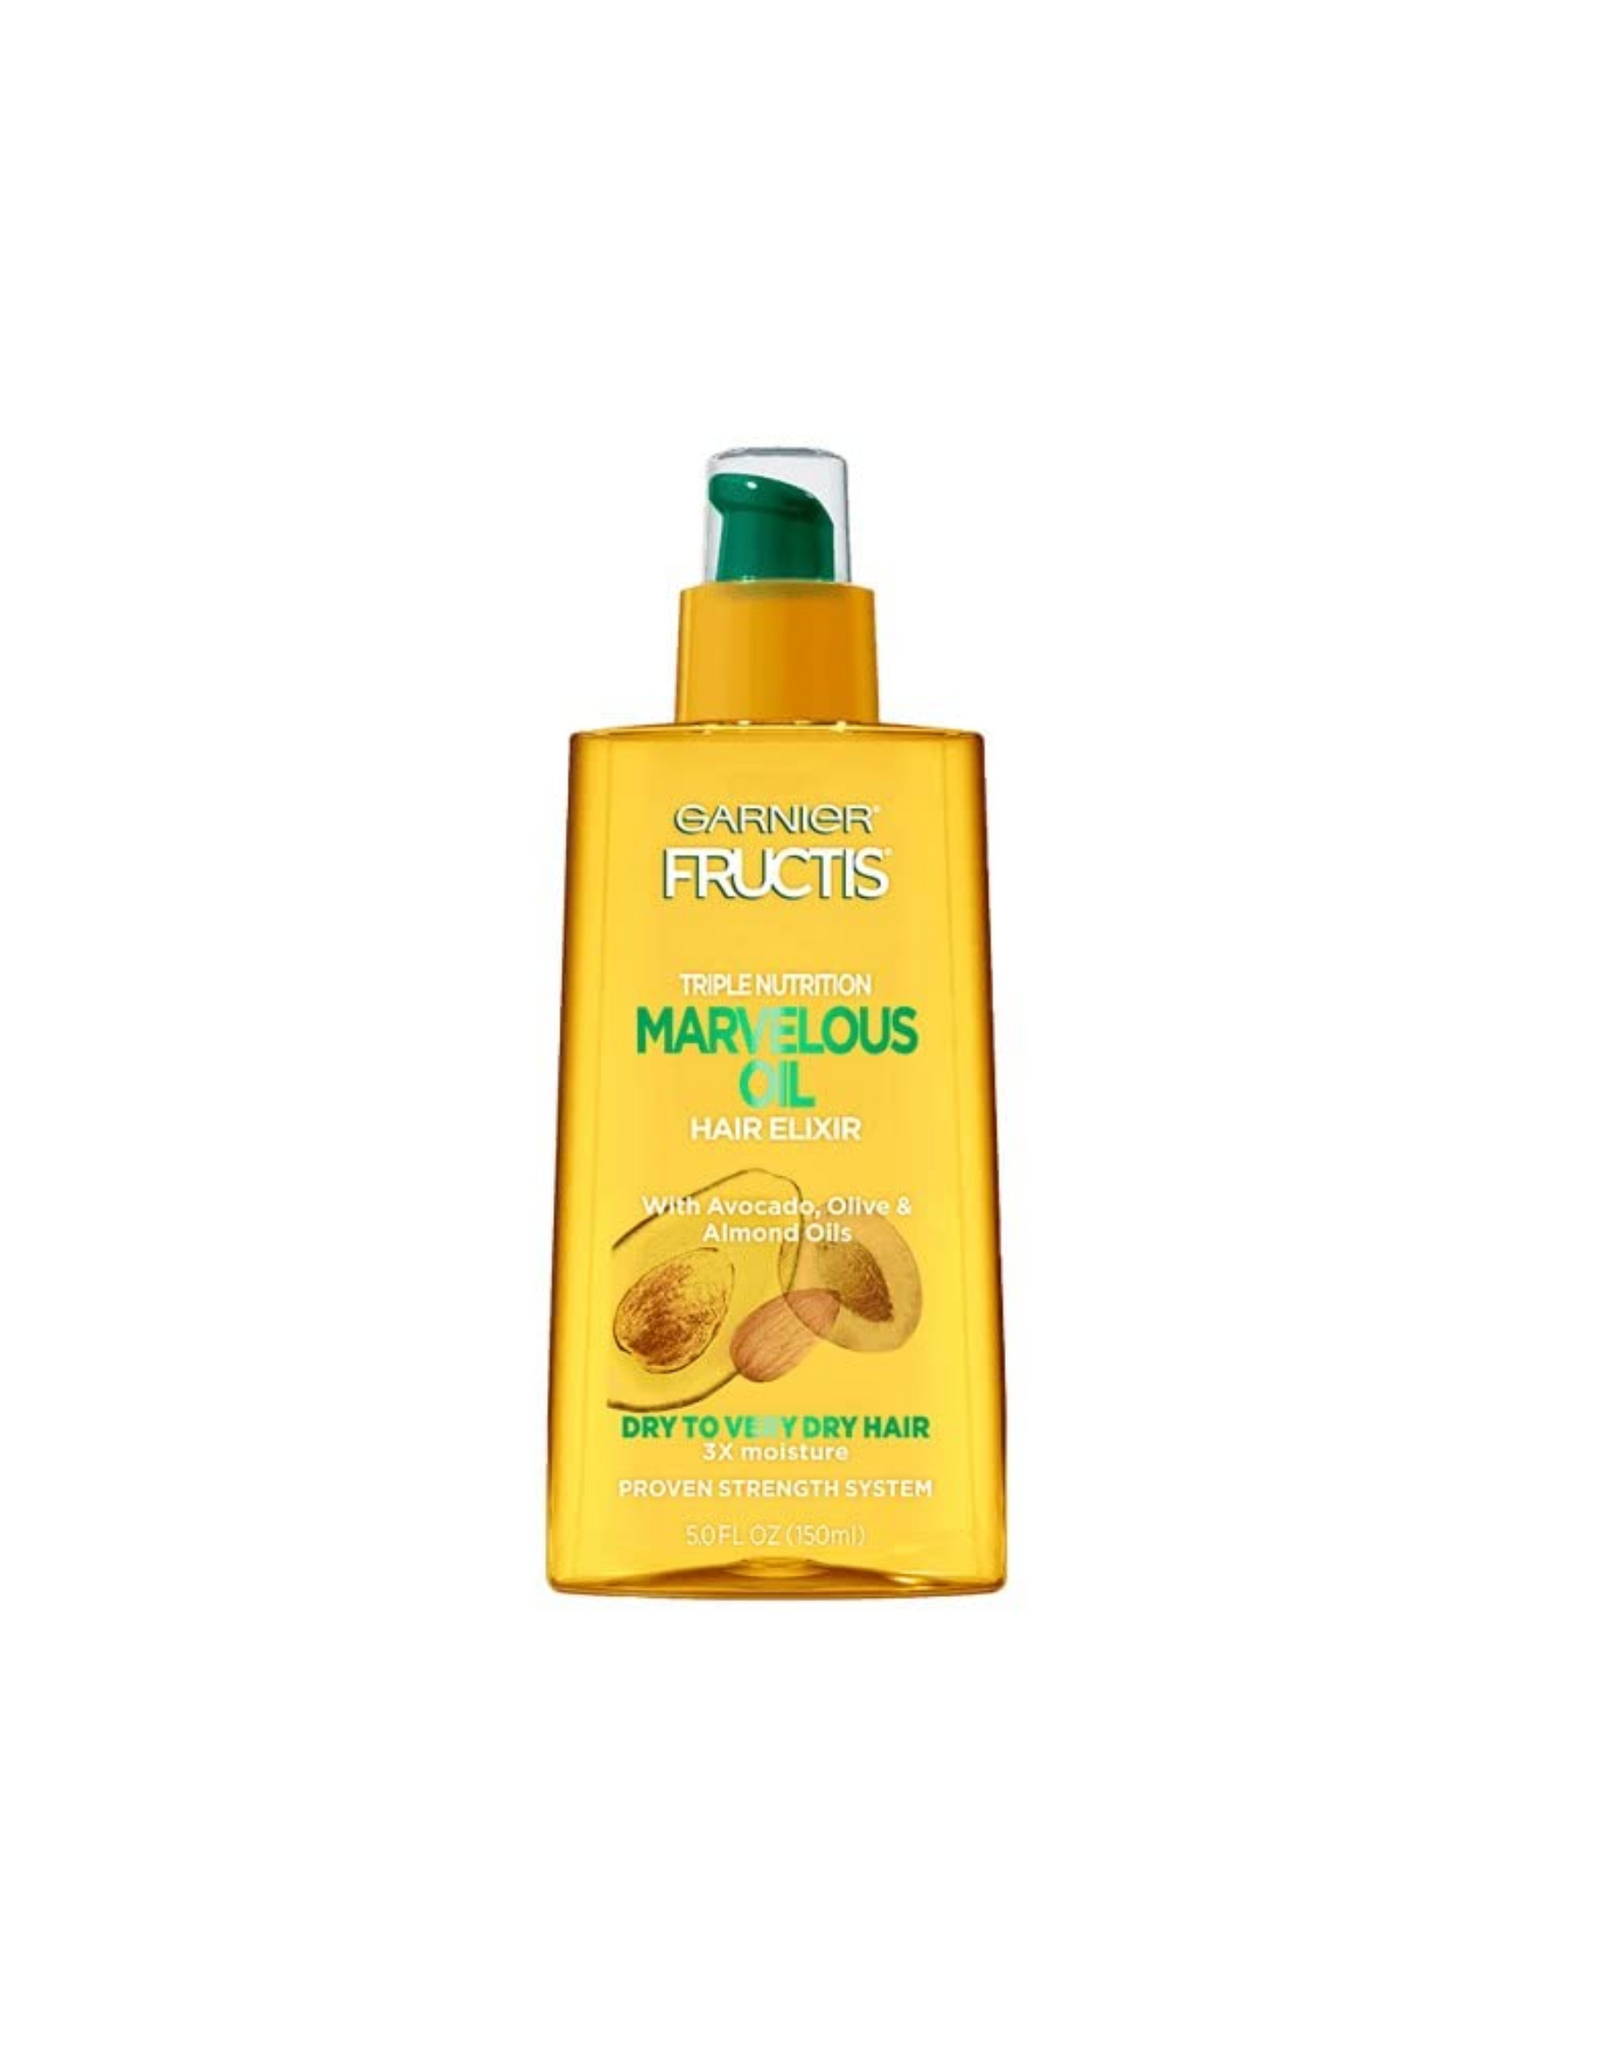 Garnier Hair Care Fructis Triple Nutrition Marvelous Oil Hair Elixir, for Dry to Very Dry Hair, 5 fl oz